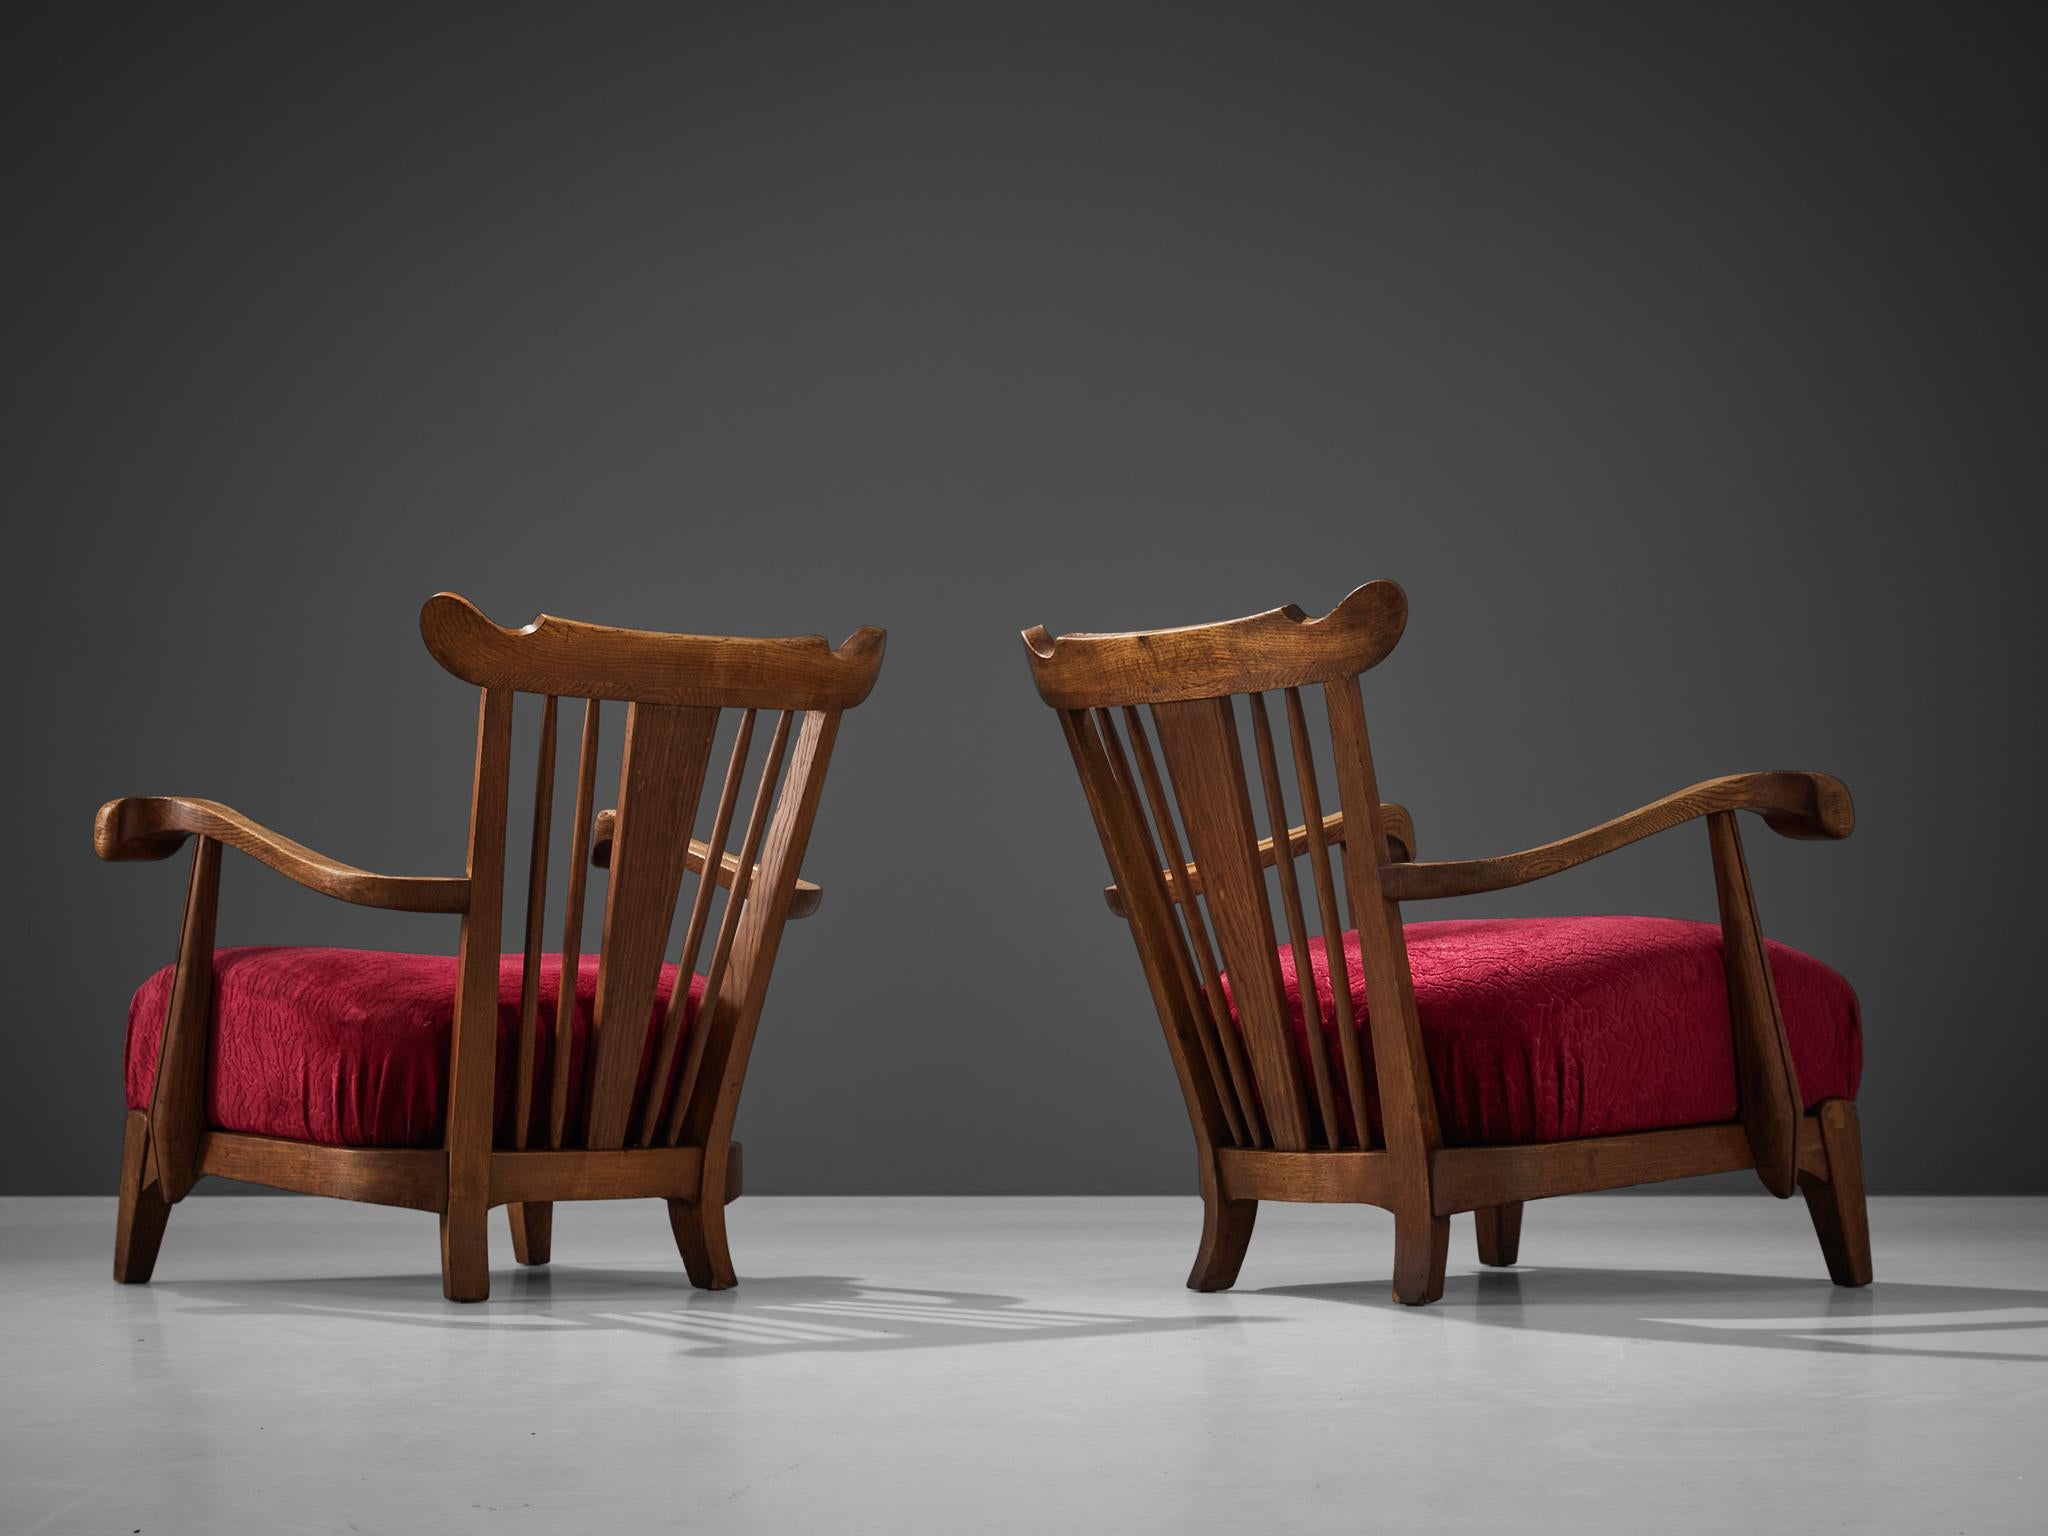 Paire de fauteuils en chêne, velours, France, années 1950.

Ces chaises longues magnifiquement conçues présentent une construction remarquable grâce aux éléments sculptés que l'on peut discerner dans le cadre en bois. Les accoudoirs sont